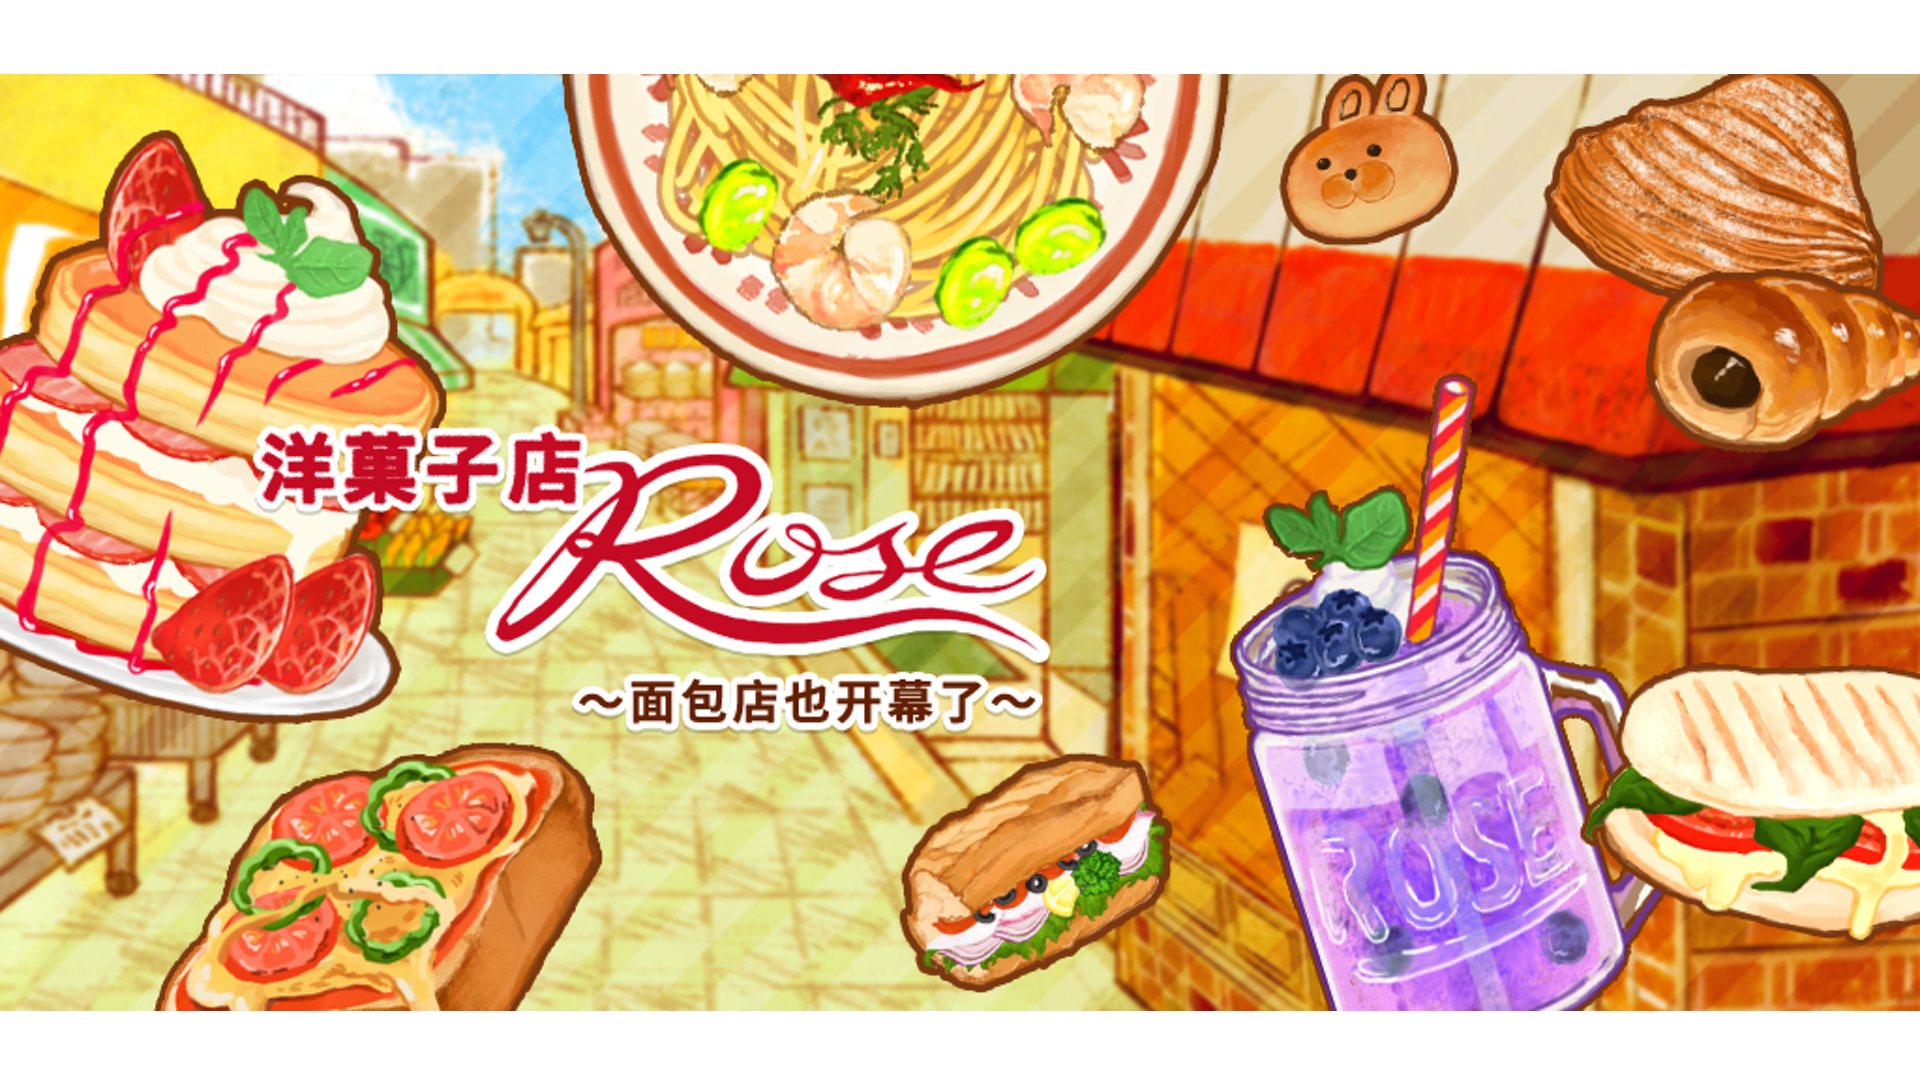 洋果子店rose食譜攻略 No.902-909